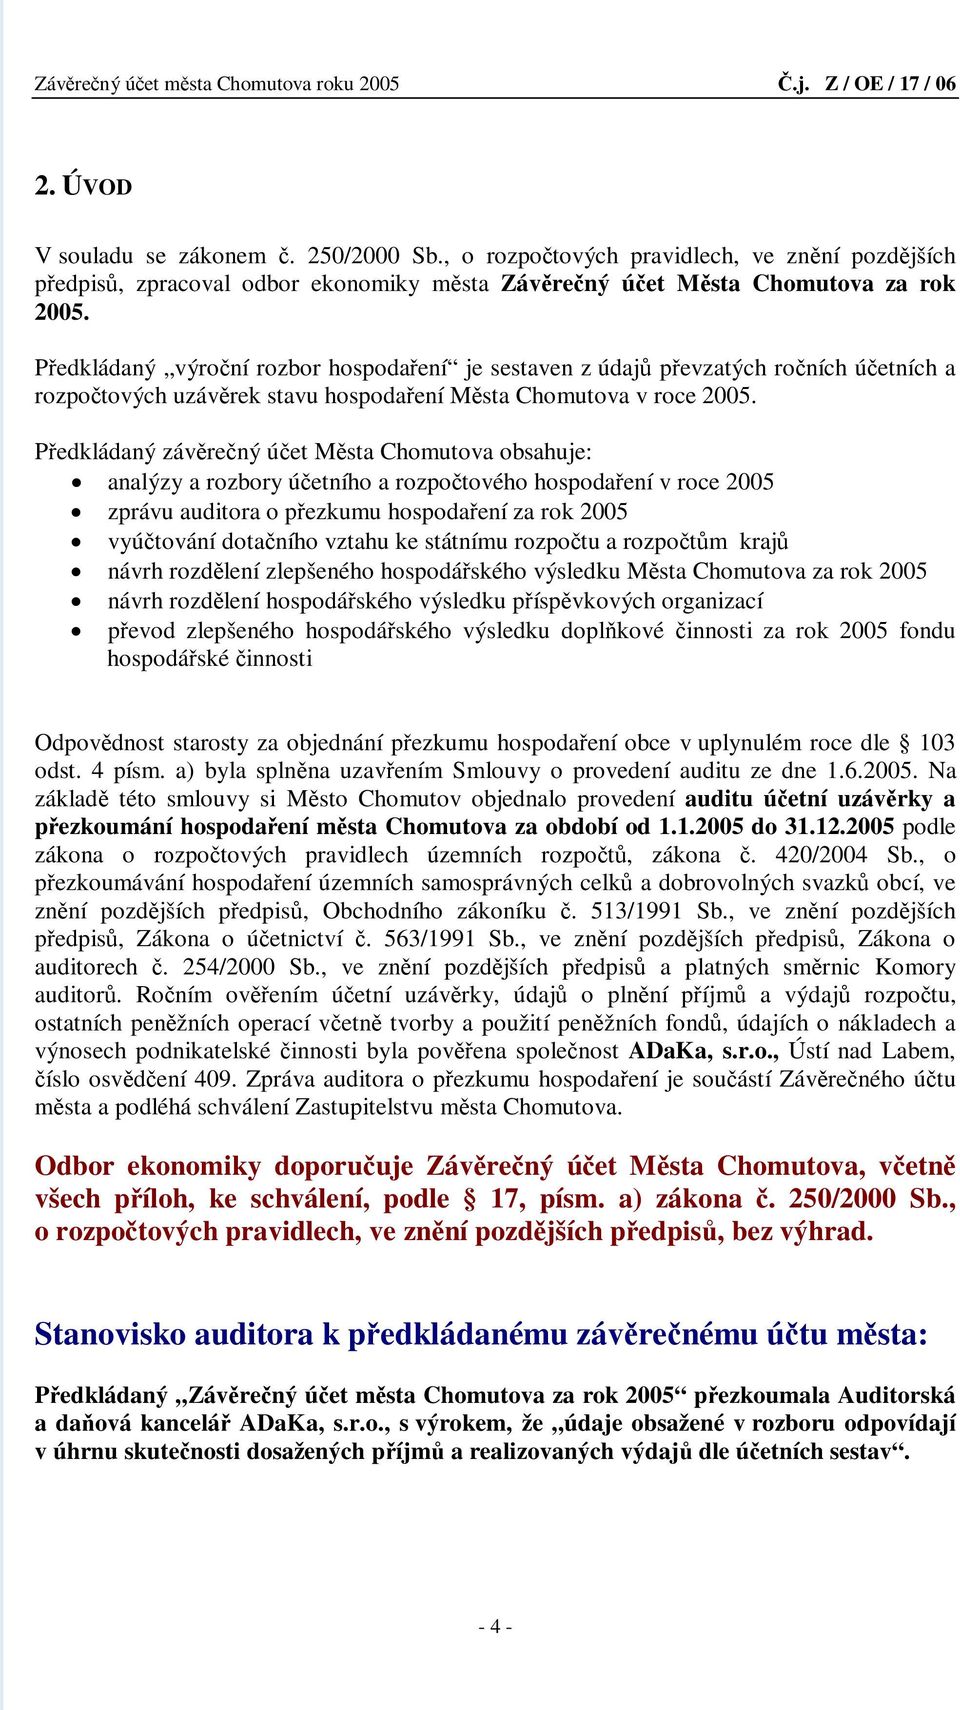 Předkládaný závěrečný účet Města Chomutova obsahuje: analýzy a rozbory účetního a rozpočtového hospodaření v roce 2005 zprávu auditora o přezkumu hospodaření za rok 2005 vyúčtování dotačního vztahu